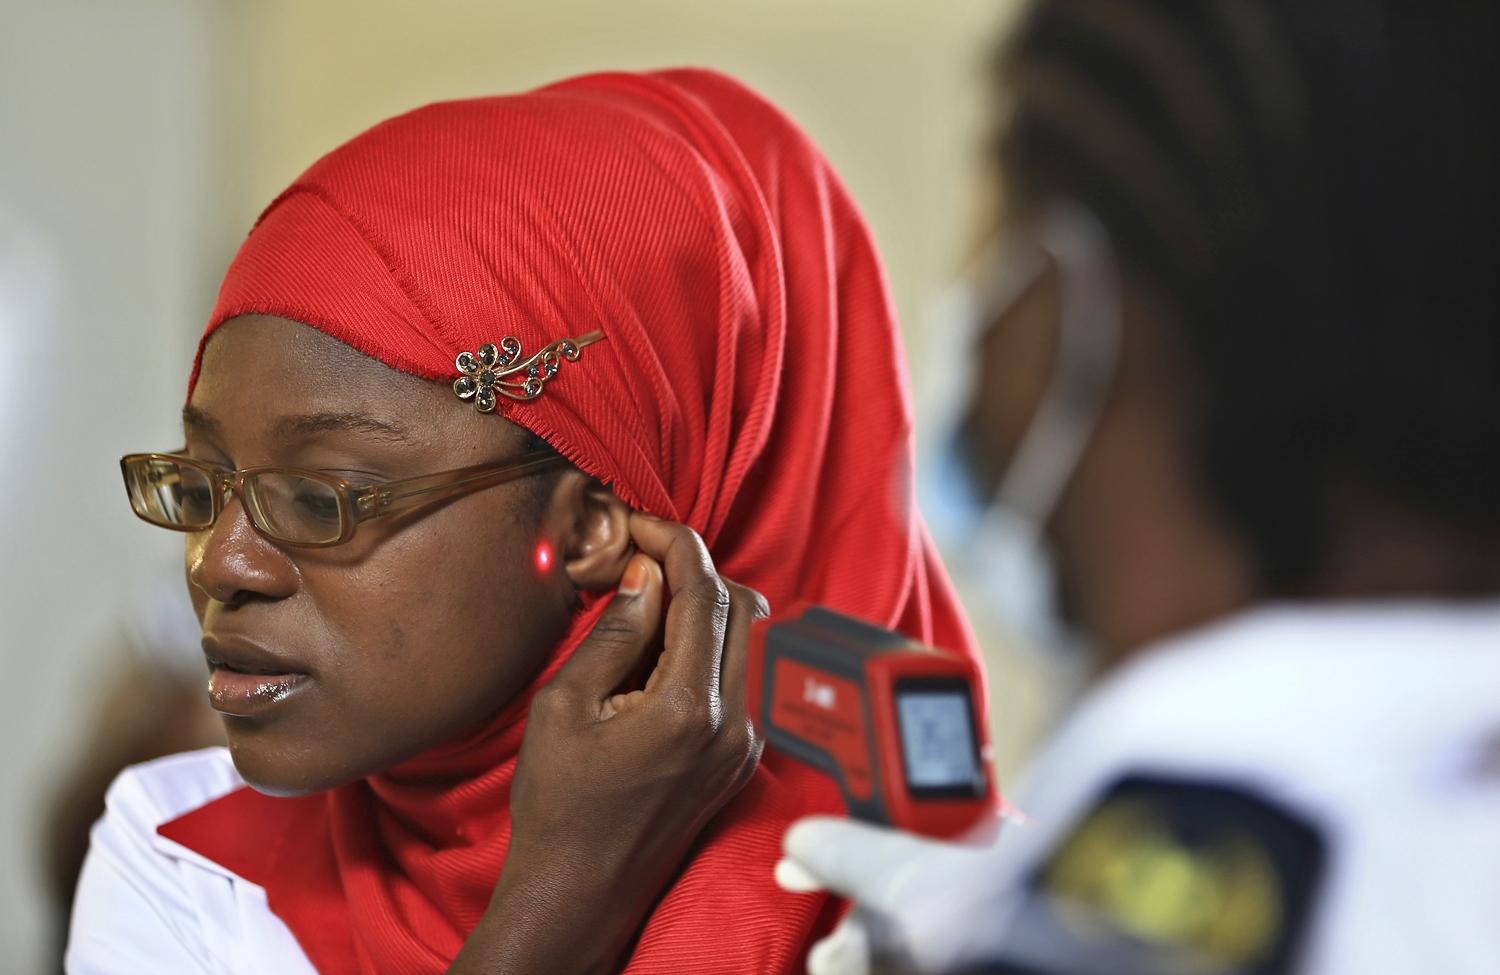 Ebolára szűrik az utasokat Abuja repterén